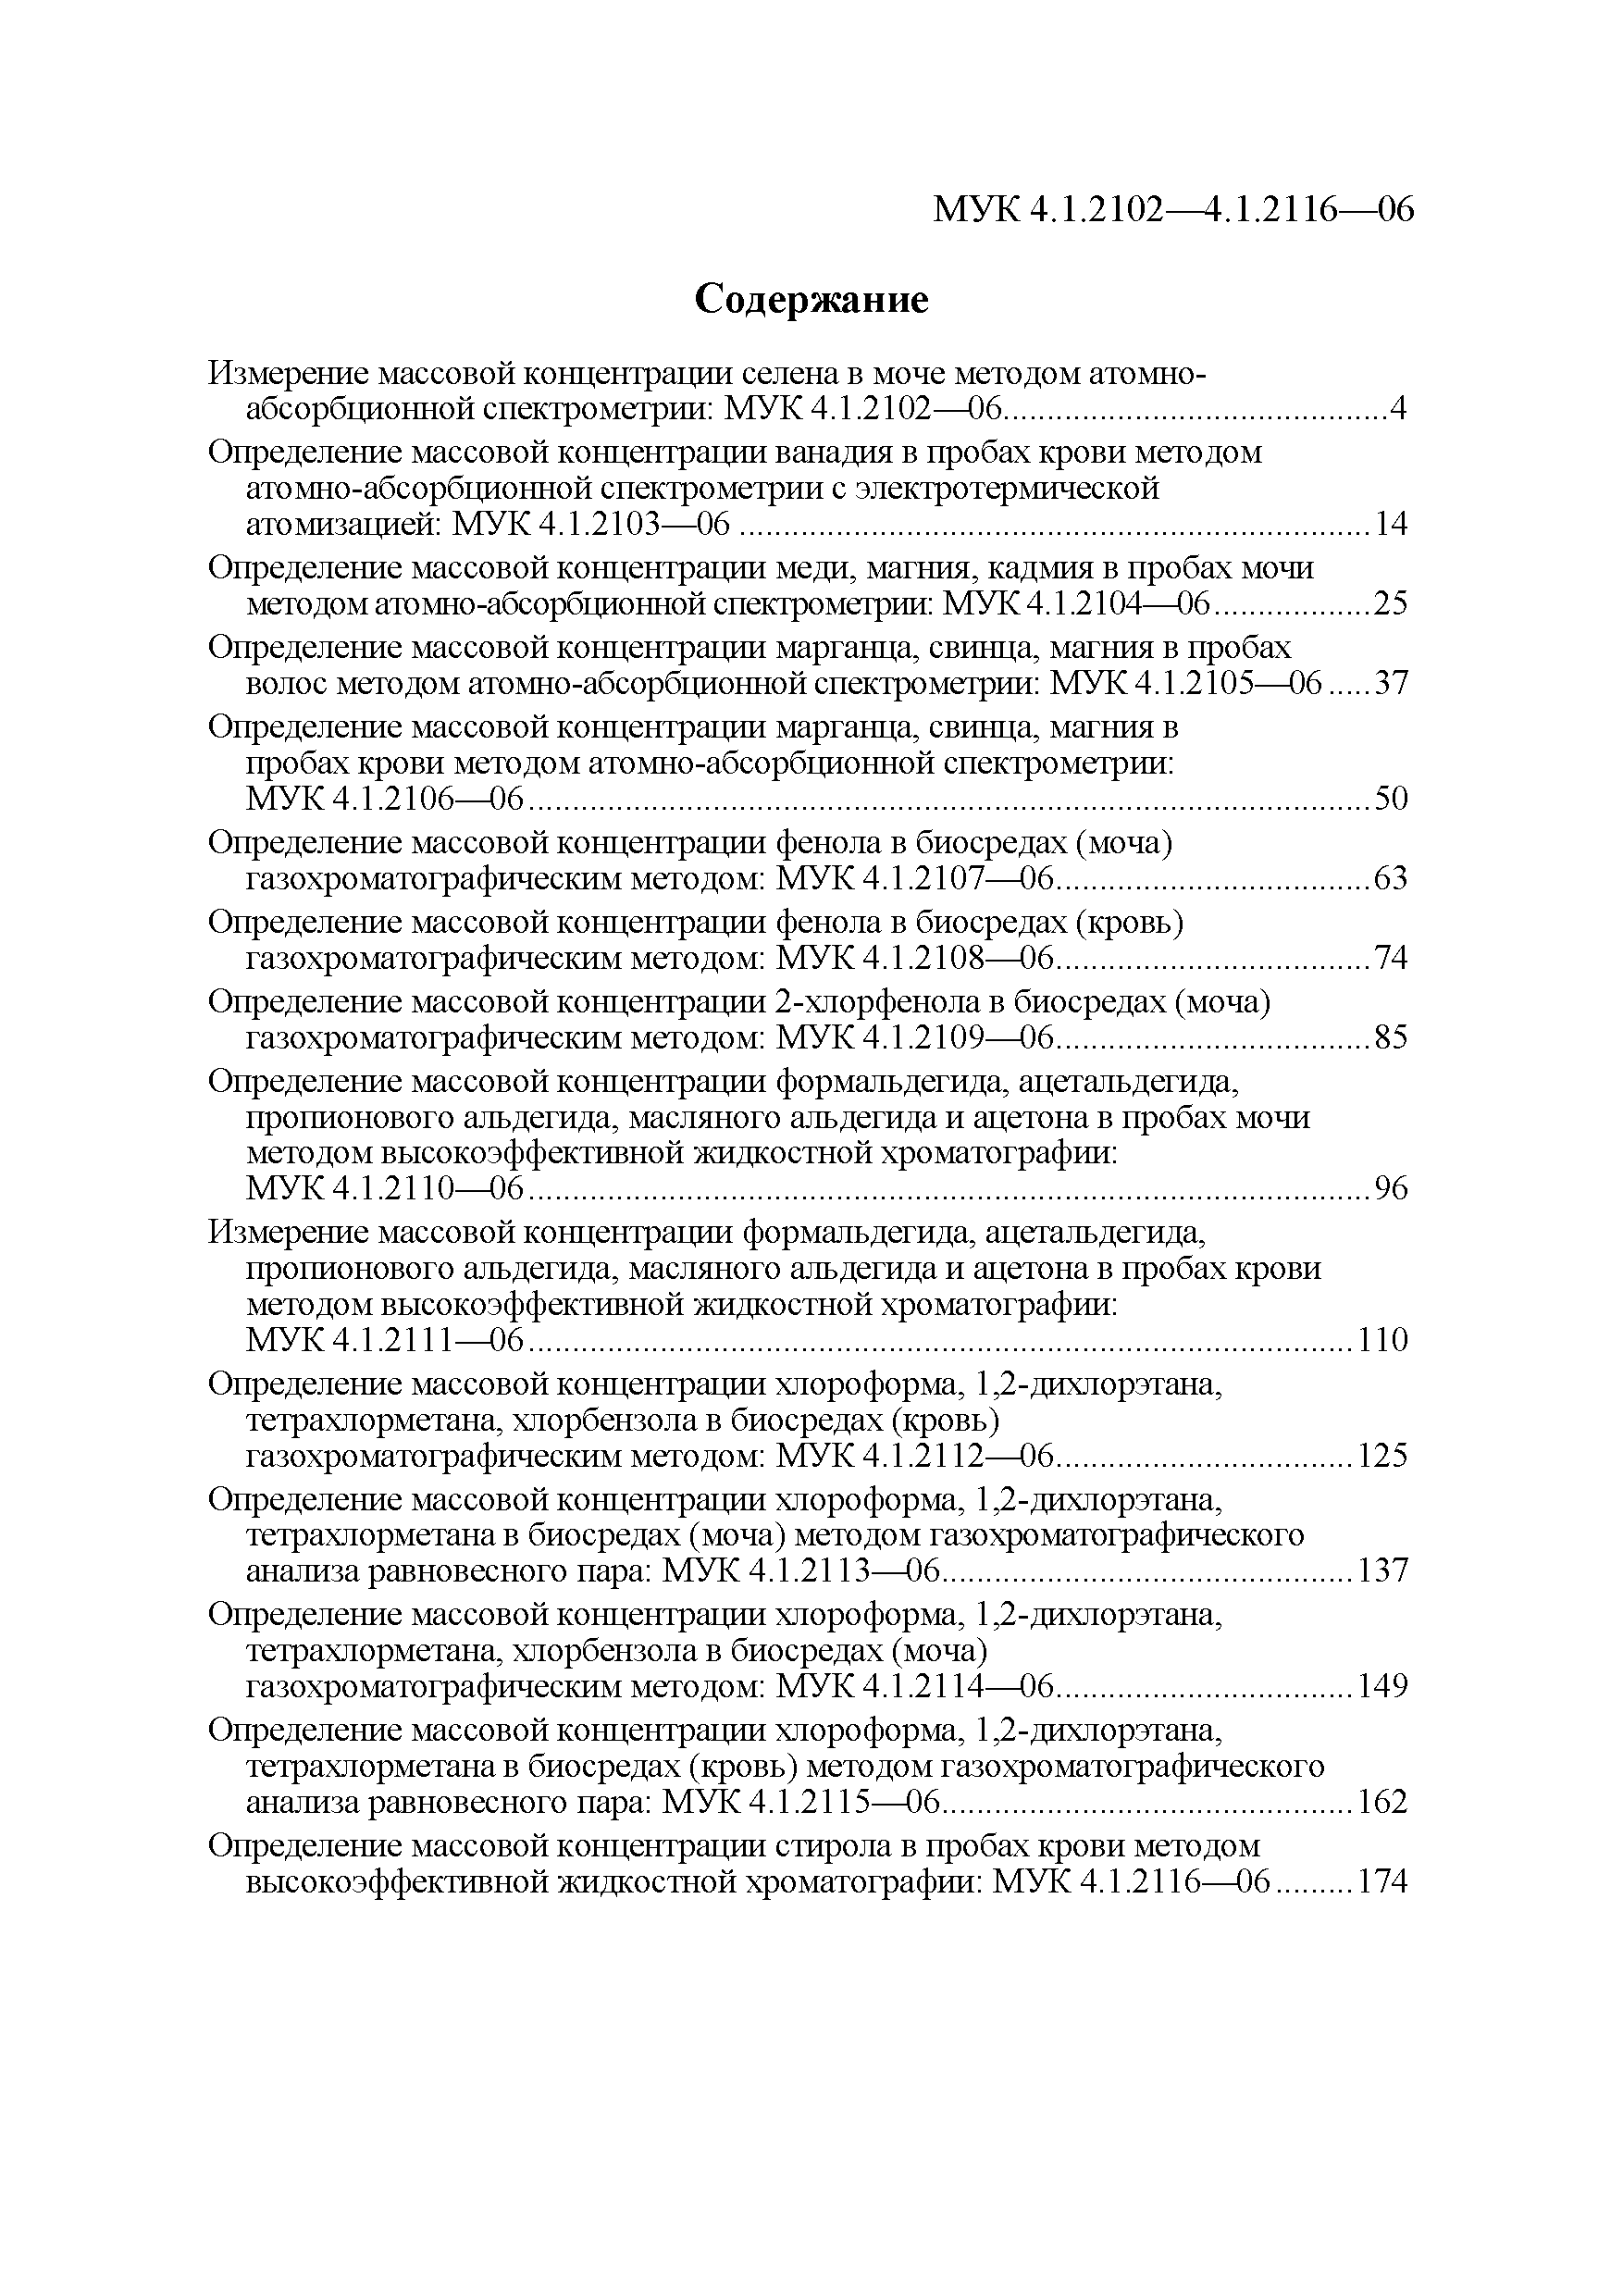 МУК 4.1.2102-06